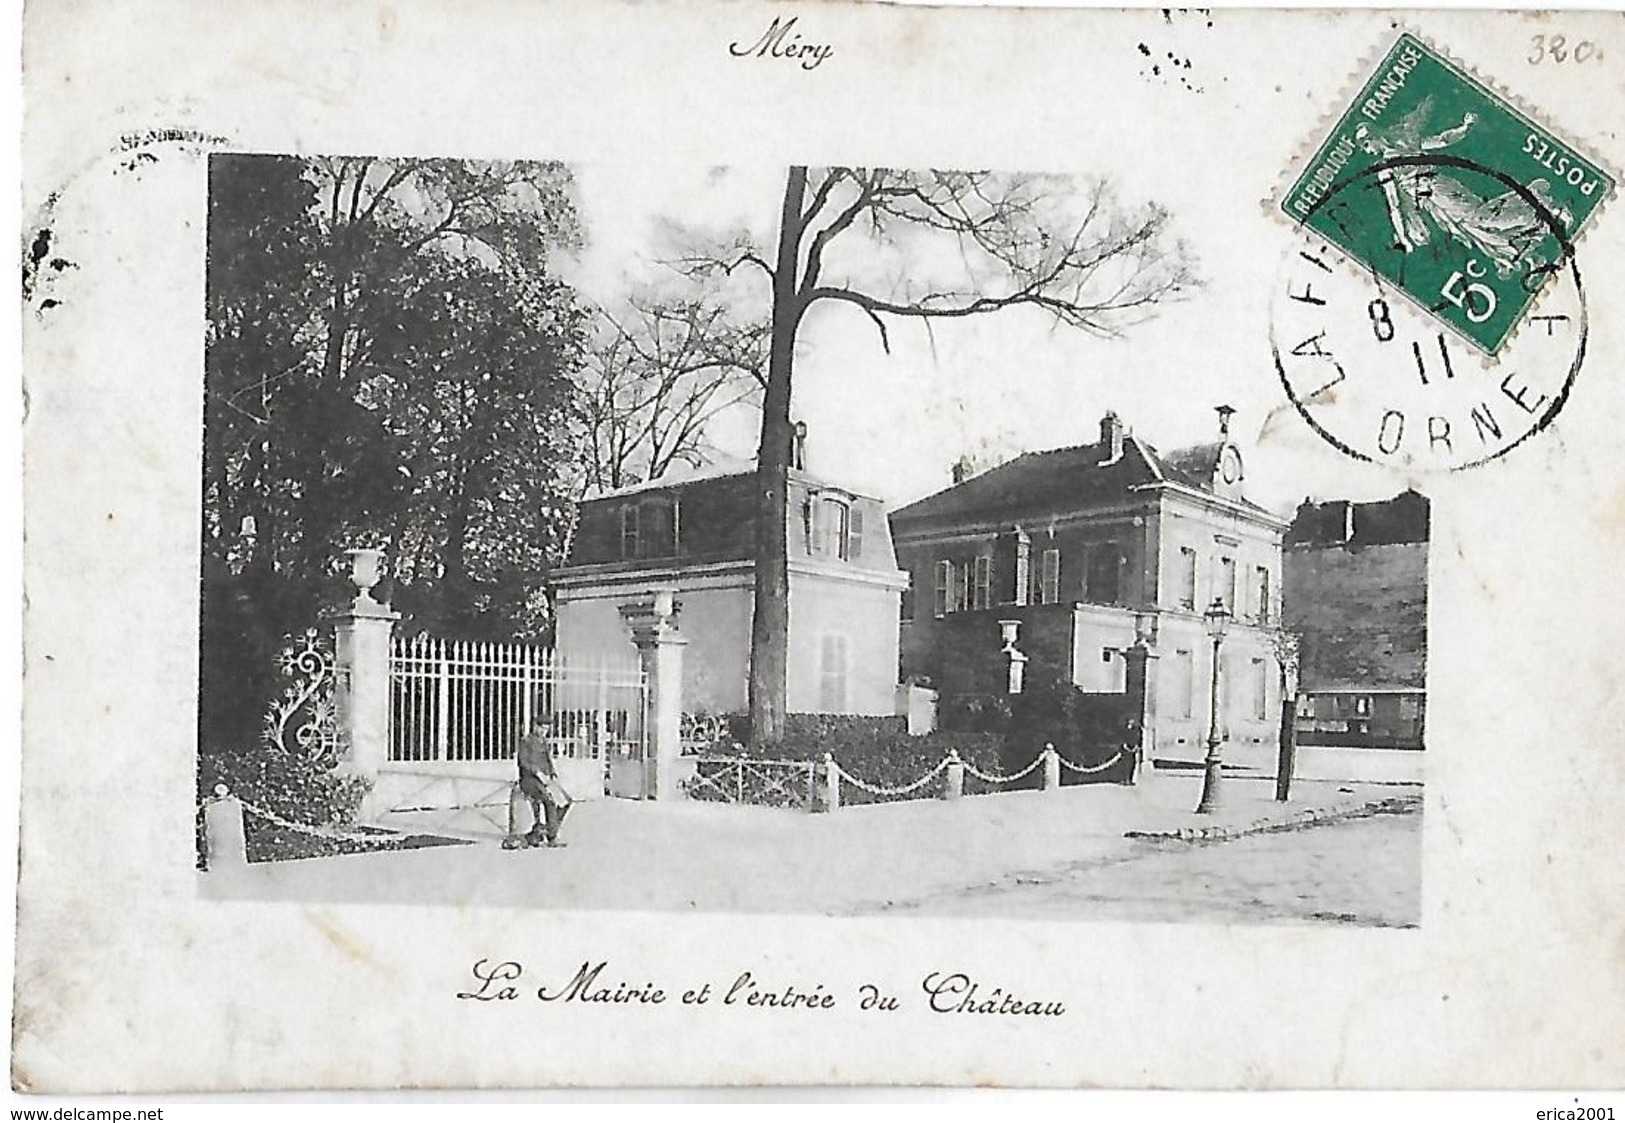 Mery Sur Oise. La Mairie Et L'entrée Du Chateau De Mery. - Mery Sur Oise